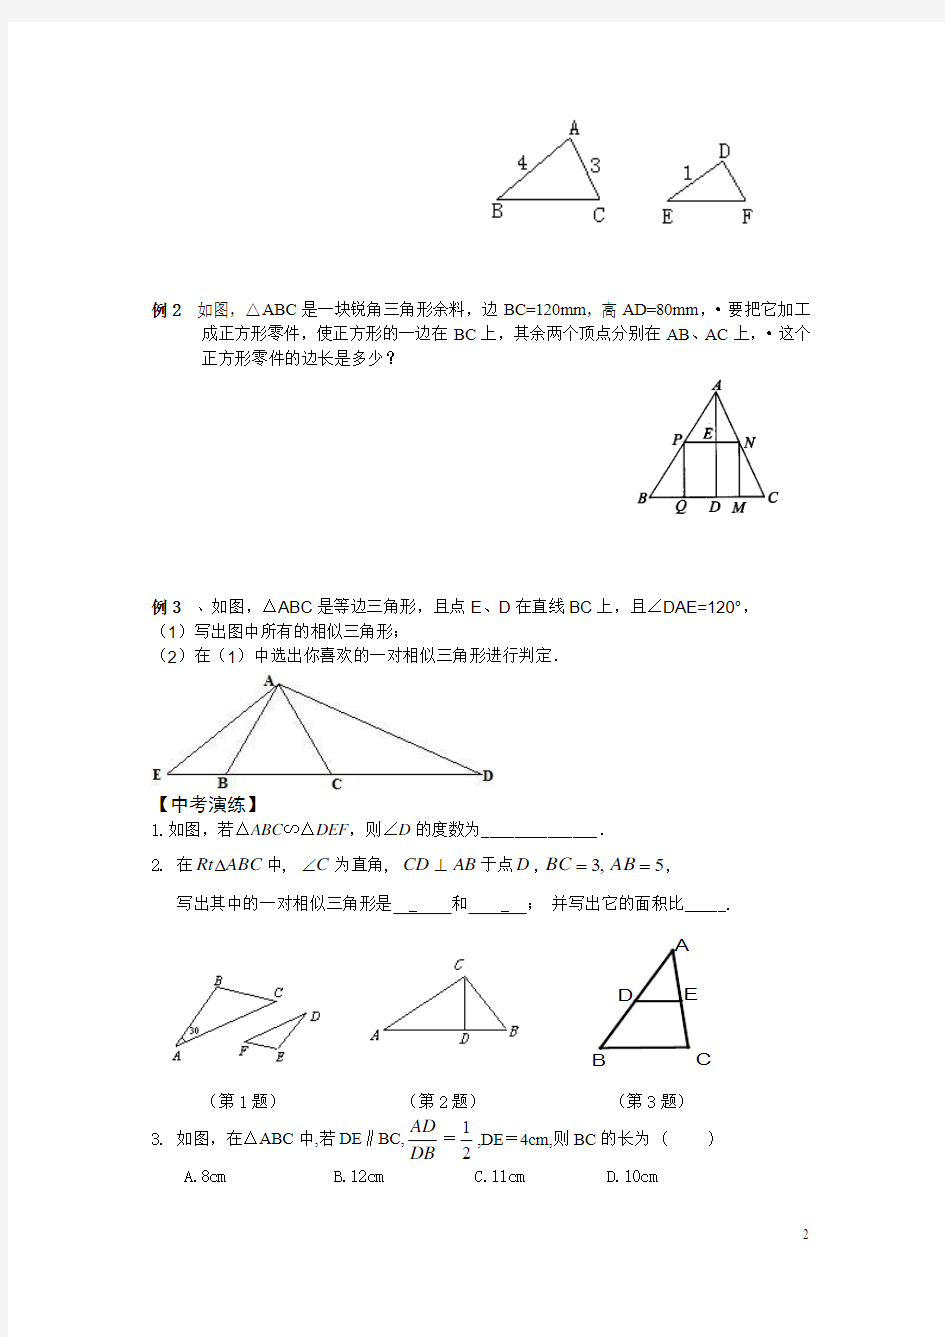 11-12(寒假)初三数学练习(相似三角形)2012-1-14